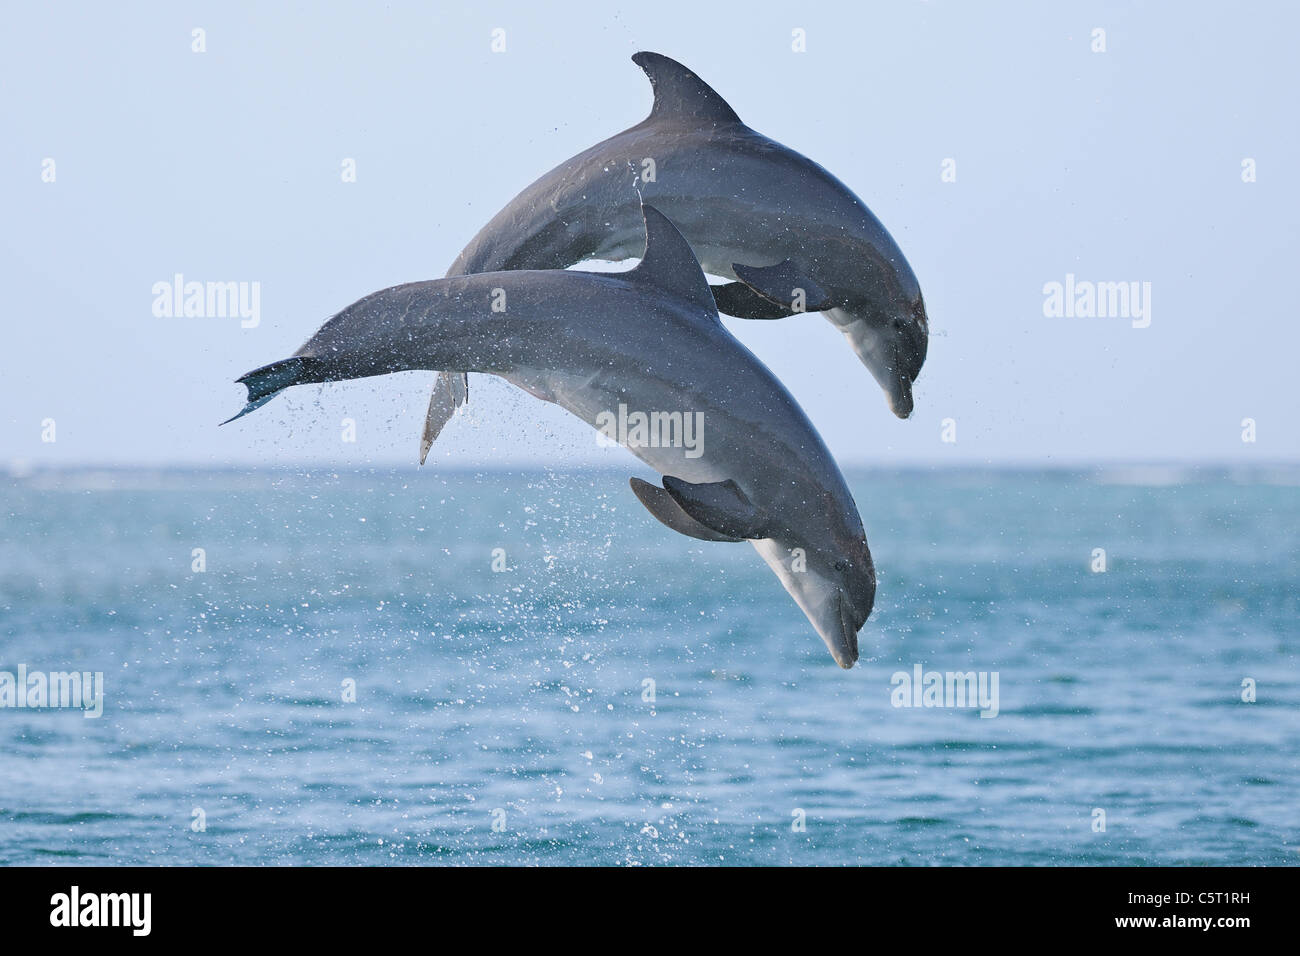 L'Amérique latine, Honduras, Bay Islands Department, Roatan, mer des Caraïbes, vue de dauphins sautant dans l'eau de mer Banque D'Images